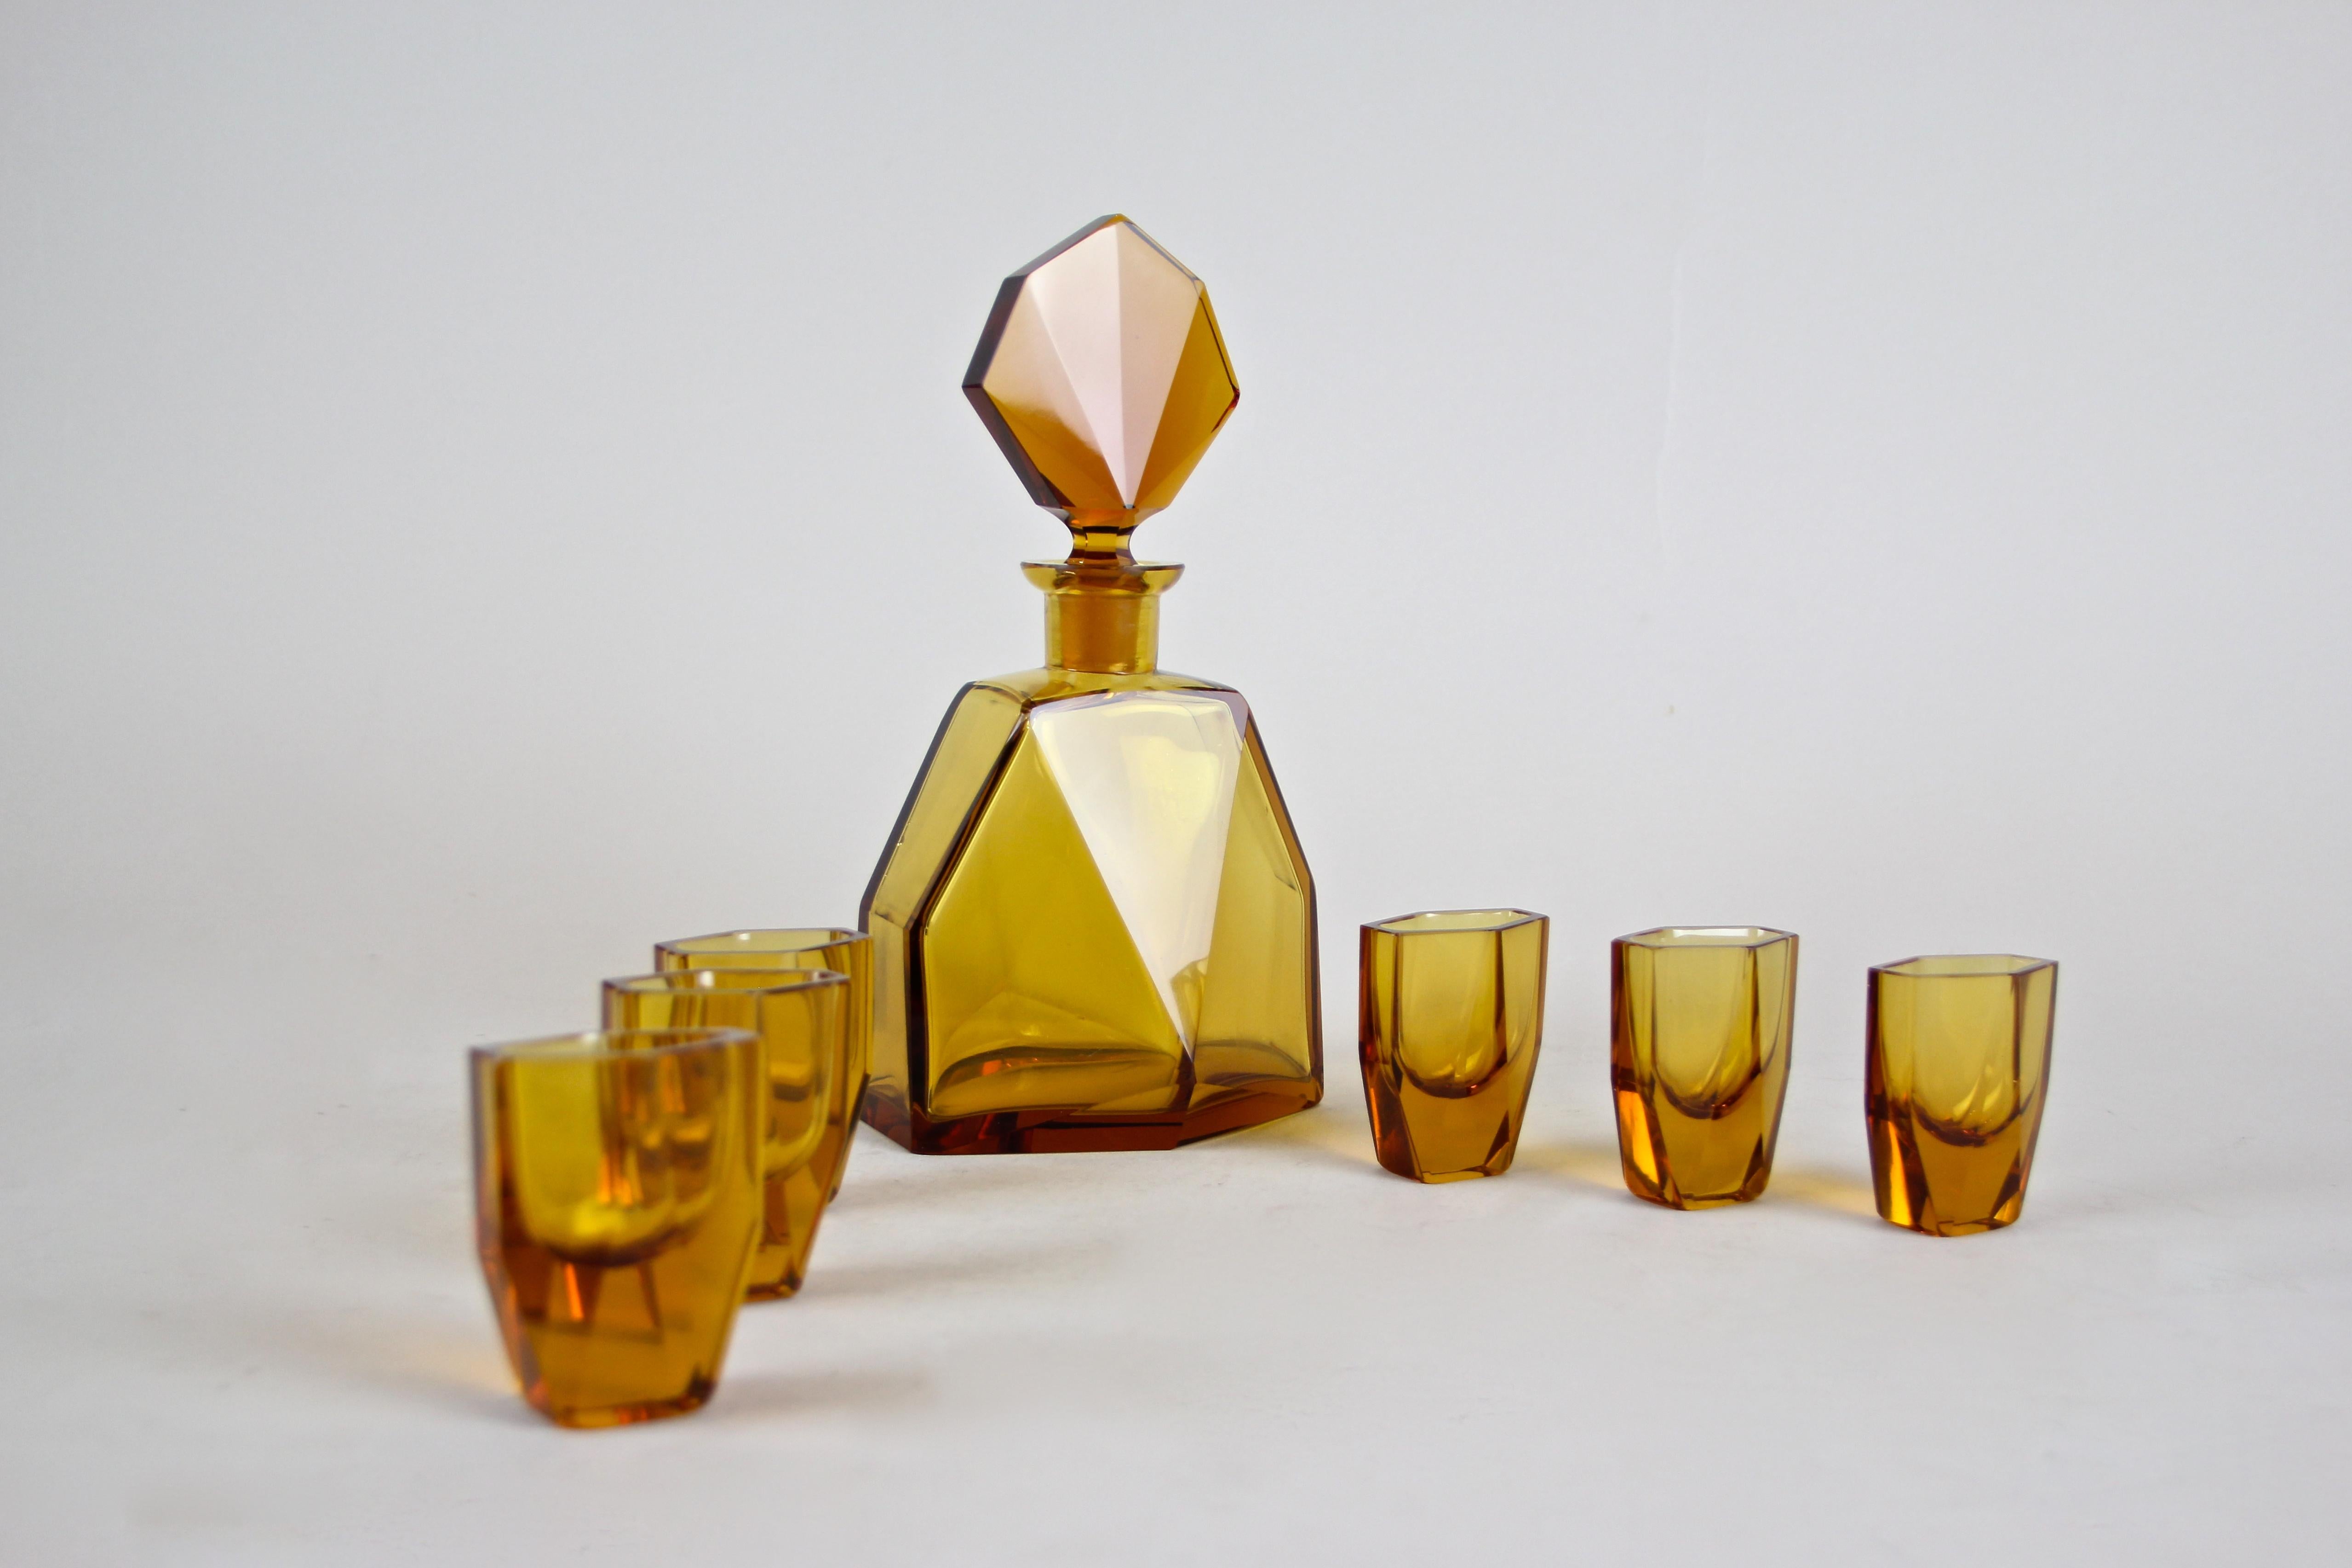 20th Century Art Deco Design Glass Liquor Set Amber-Colored, CZ, circa 1925